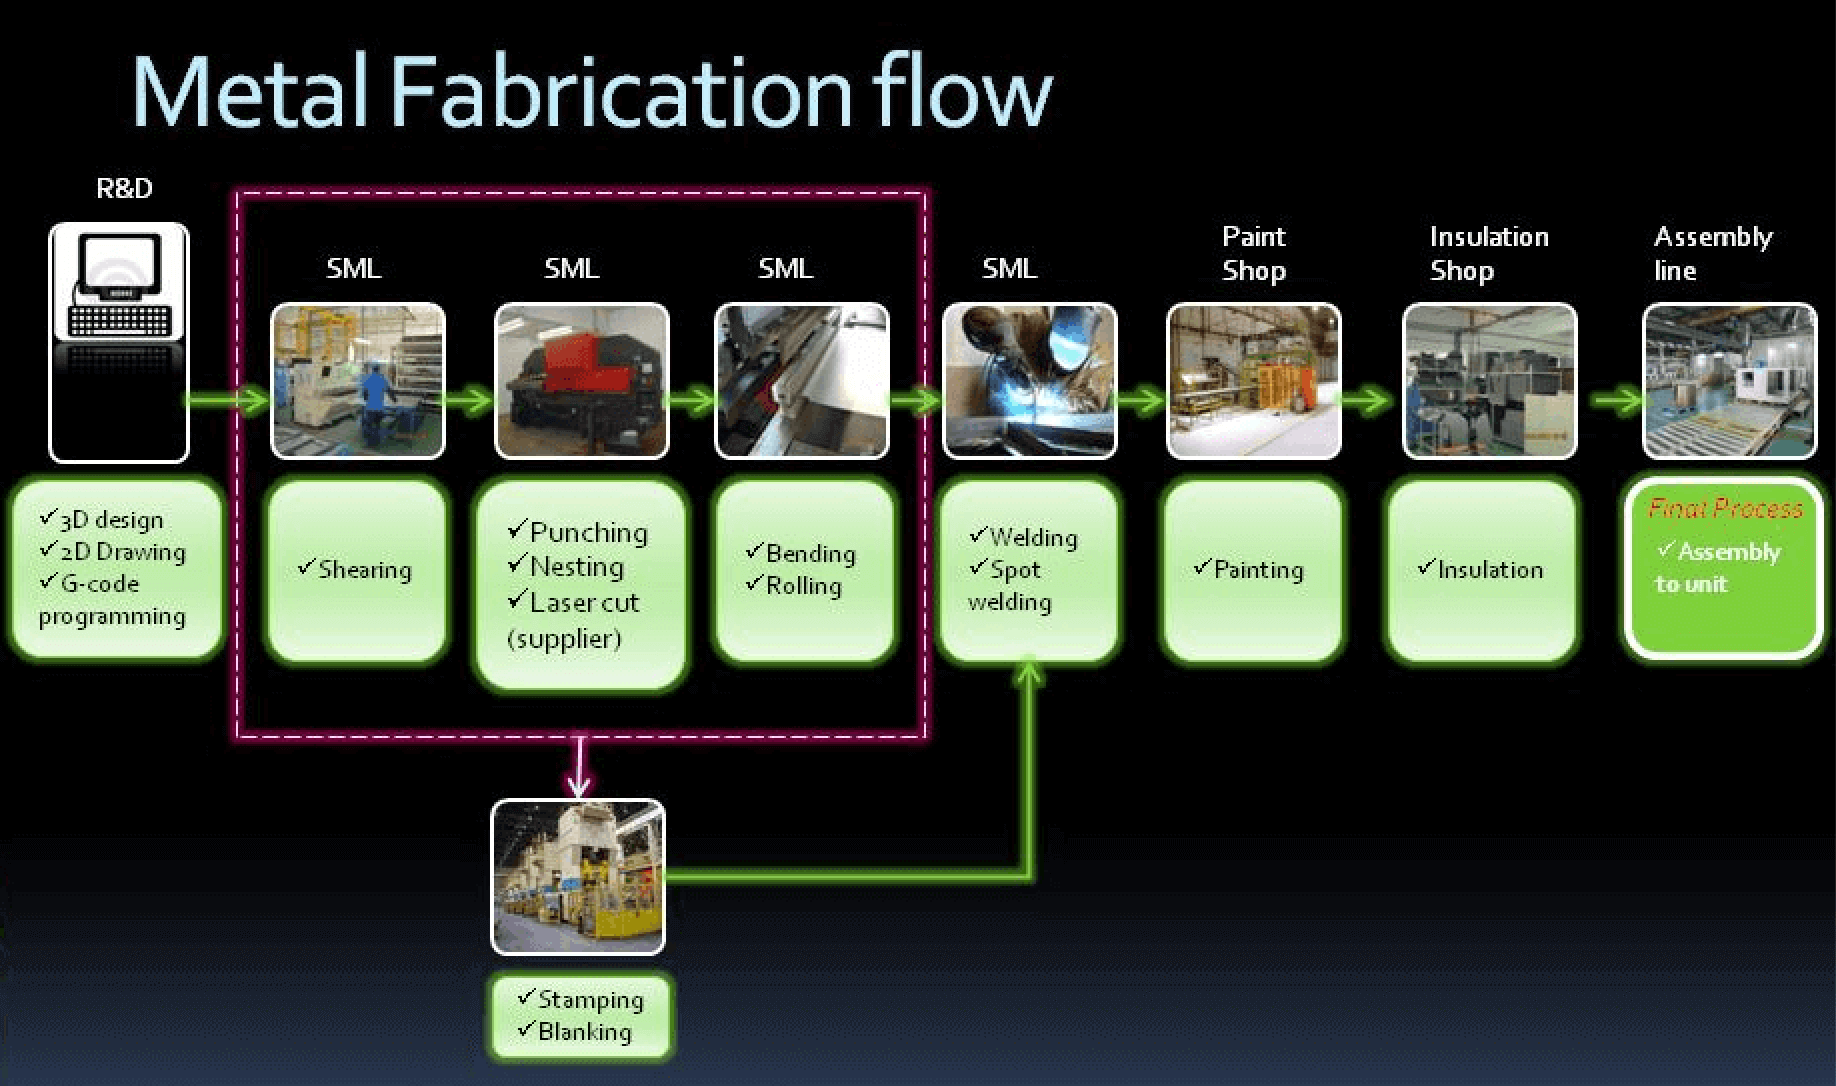 sheet metal fabrication business plan